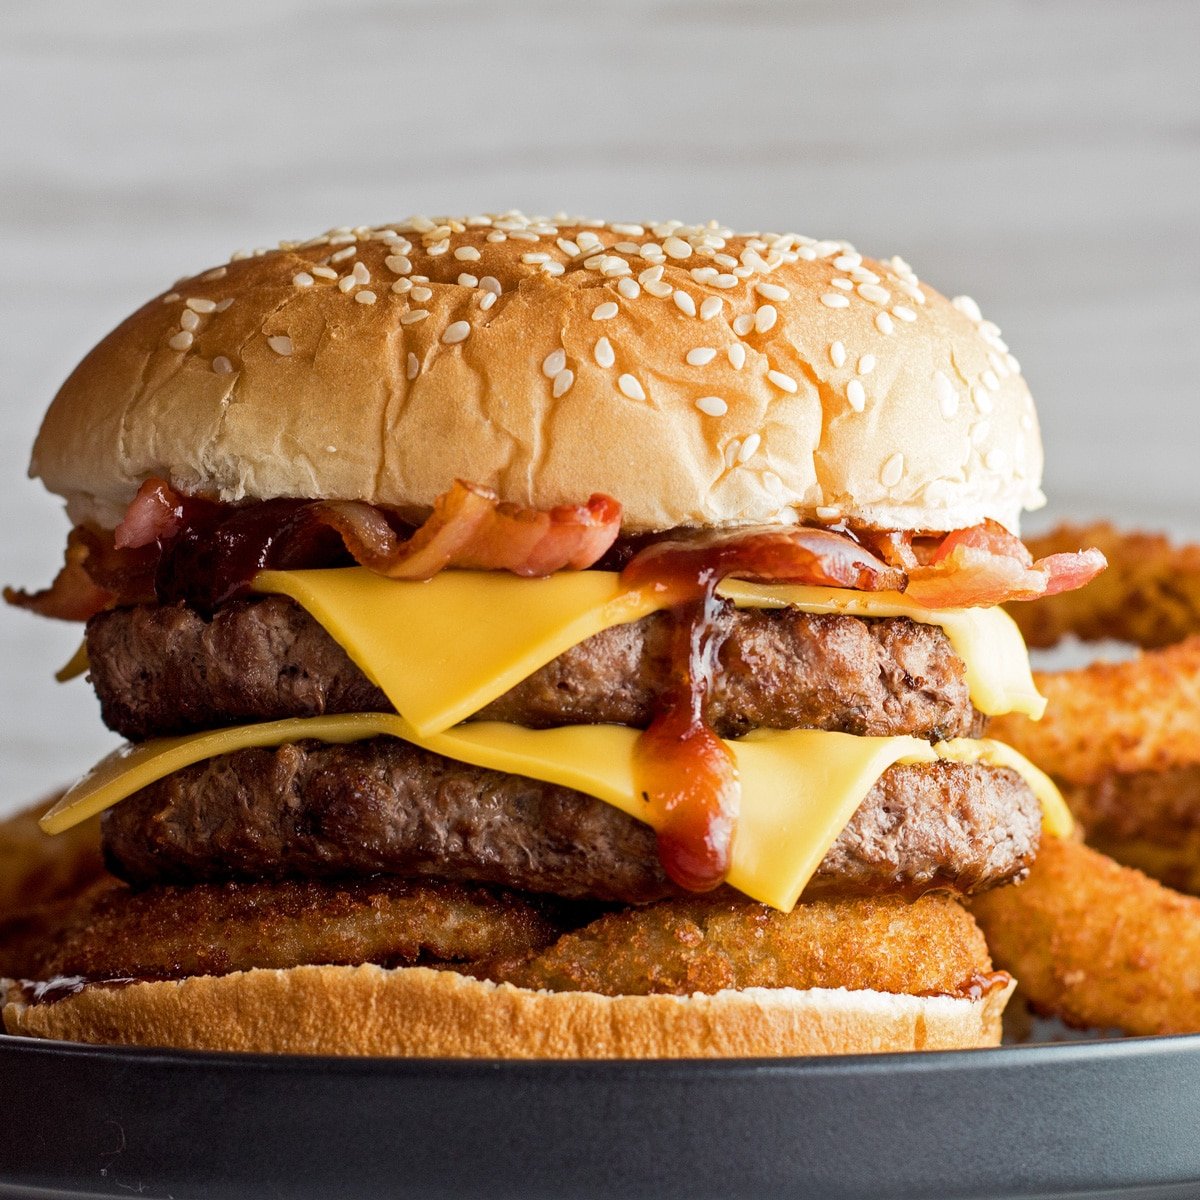 Western bacon cheeseburger met een kant van uienringen.